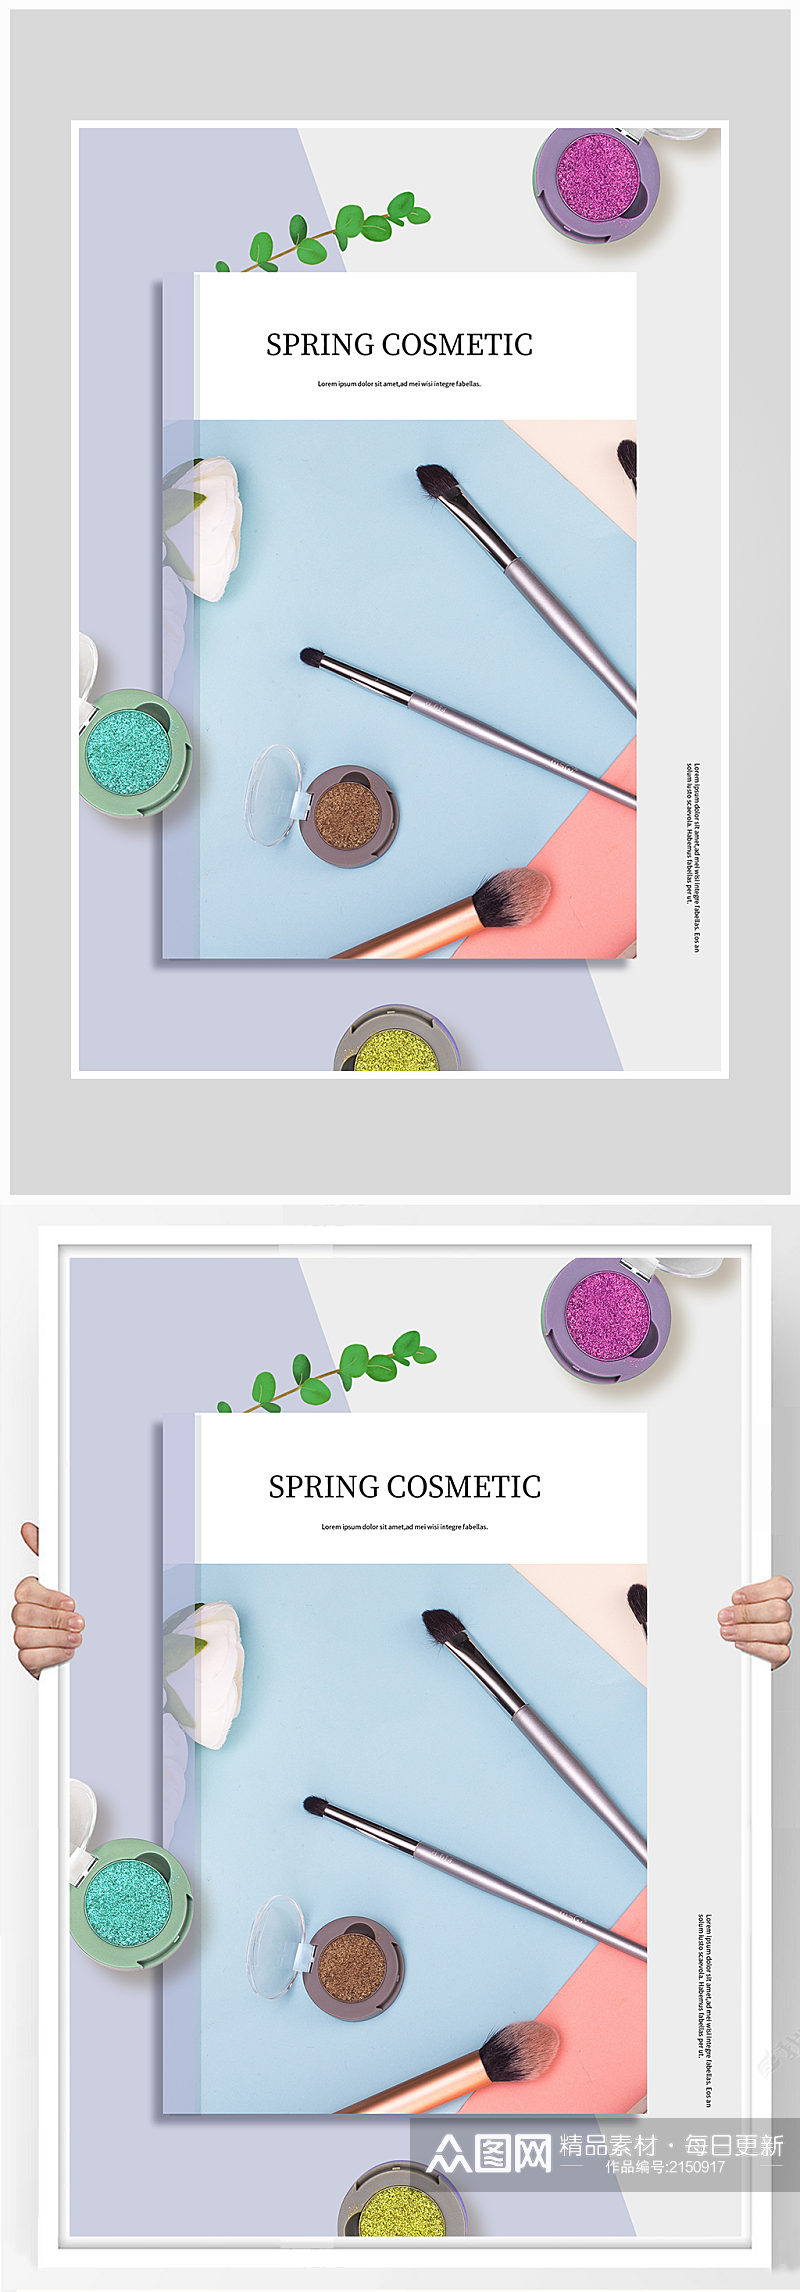 创意质感简约化妆品海报设计素材